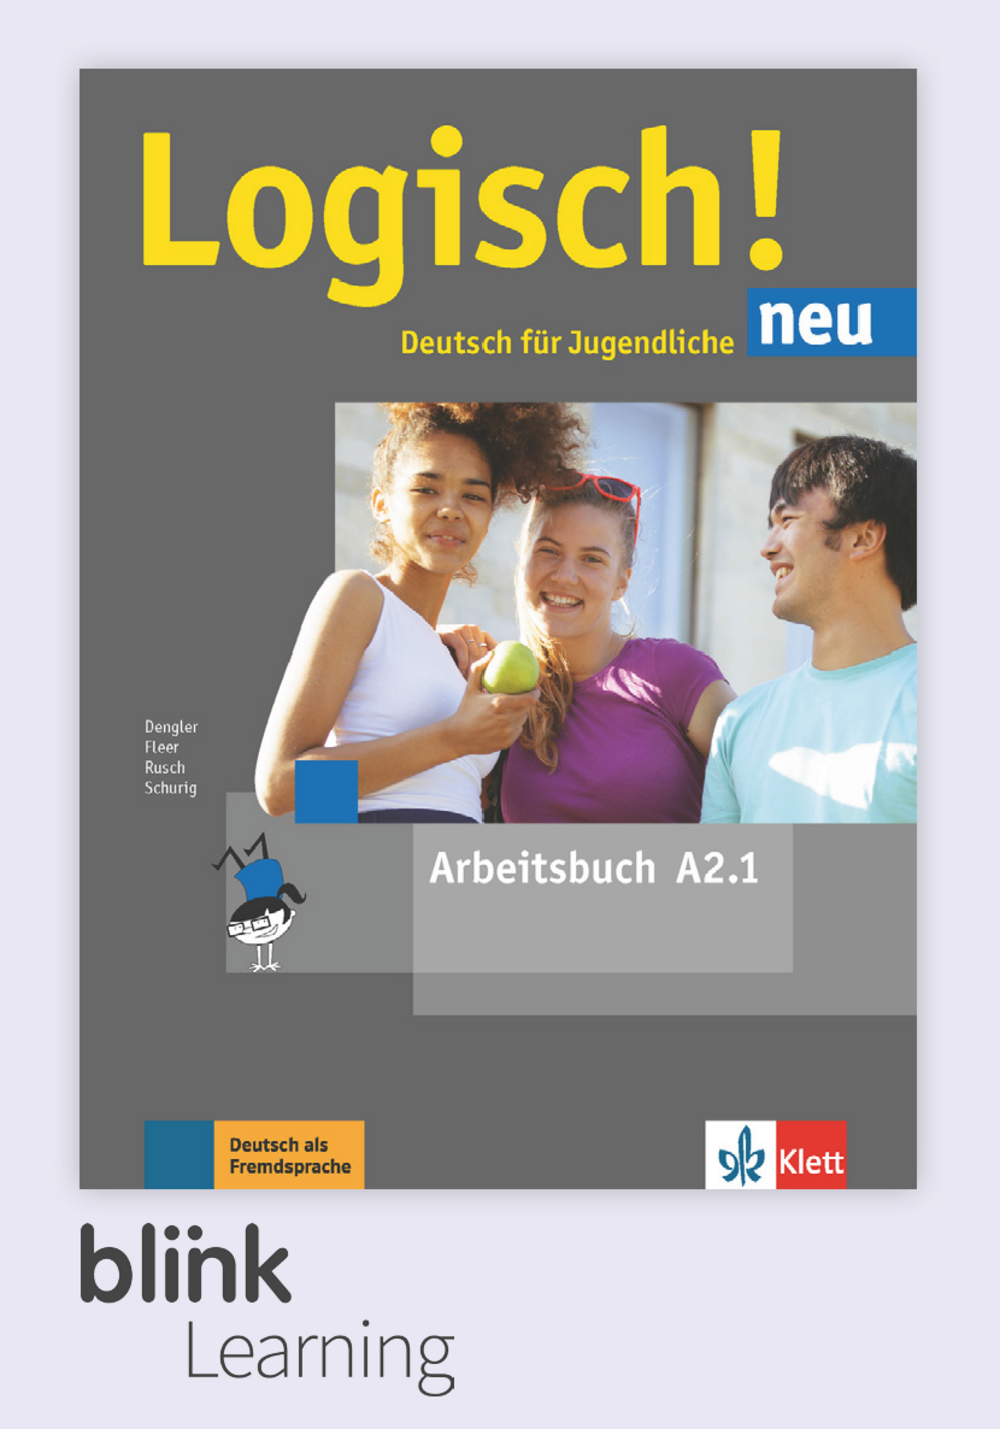 Logisch! neu A2.1 Digital Arbeitsbuch fur Unterrichtende / Цифровая рабочая тетрадь для учителя